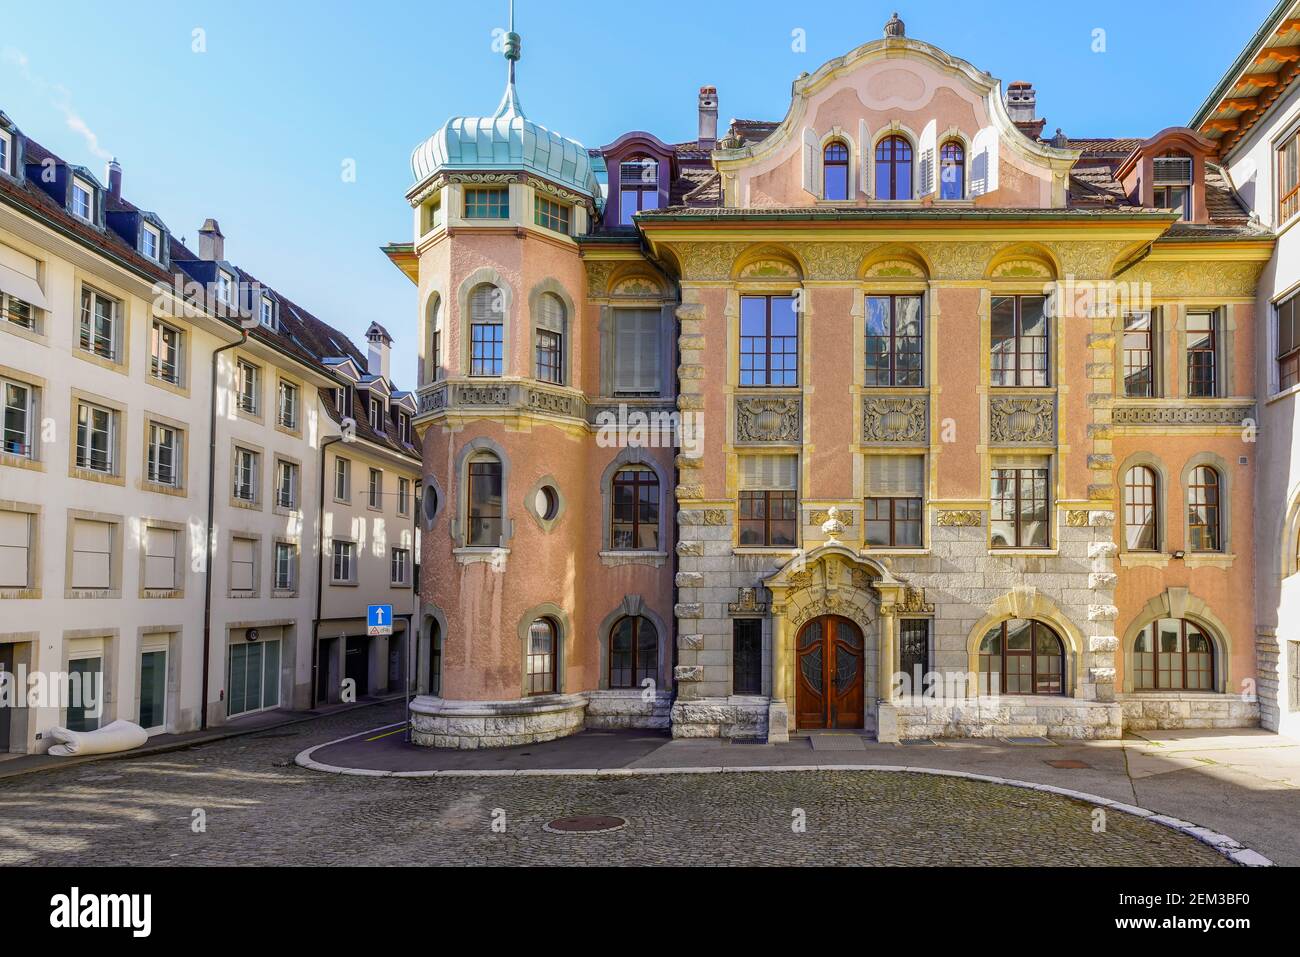 Die südliche Erweiterung des Solothurner Rathauses im Jugendstil wurde 1903 wieder aufgebaut. Kanton Solothurn, Schweiz. Stockfoto